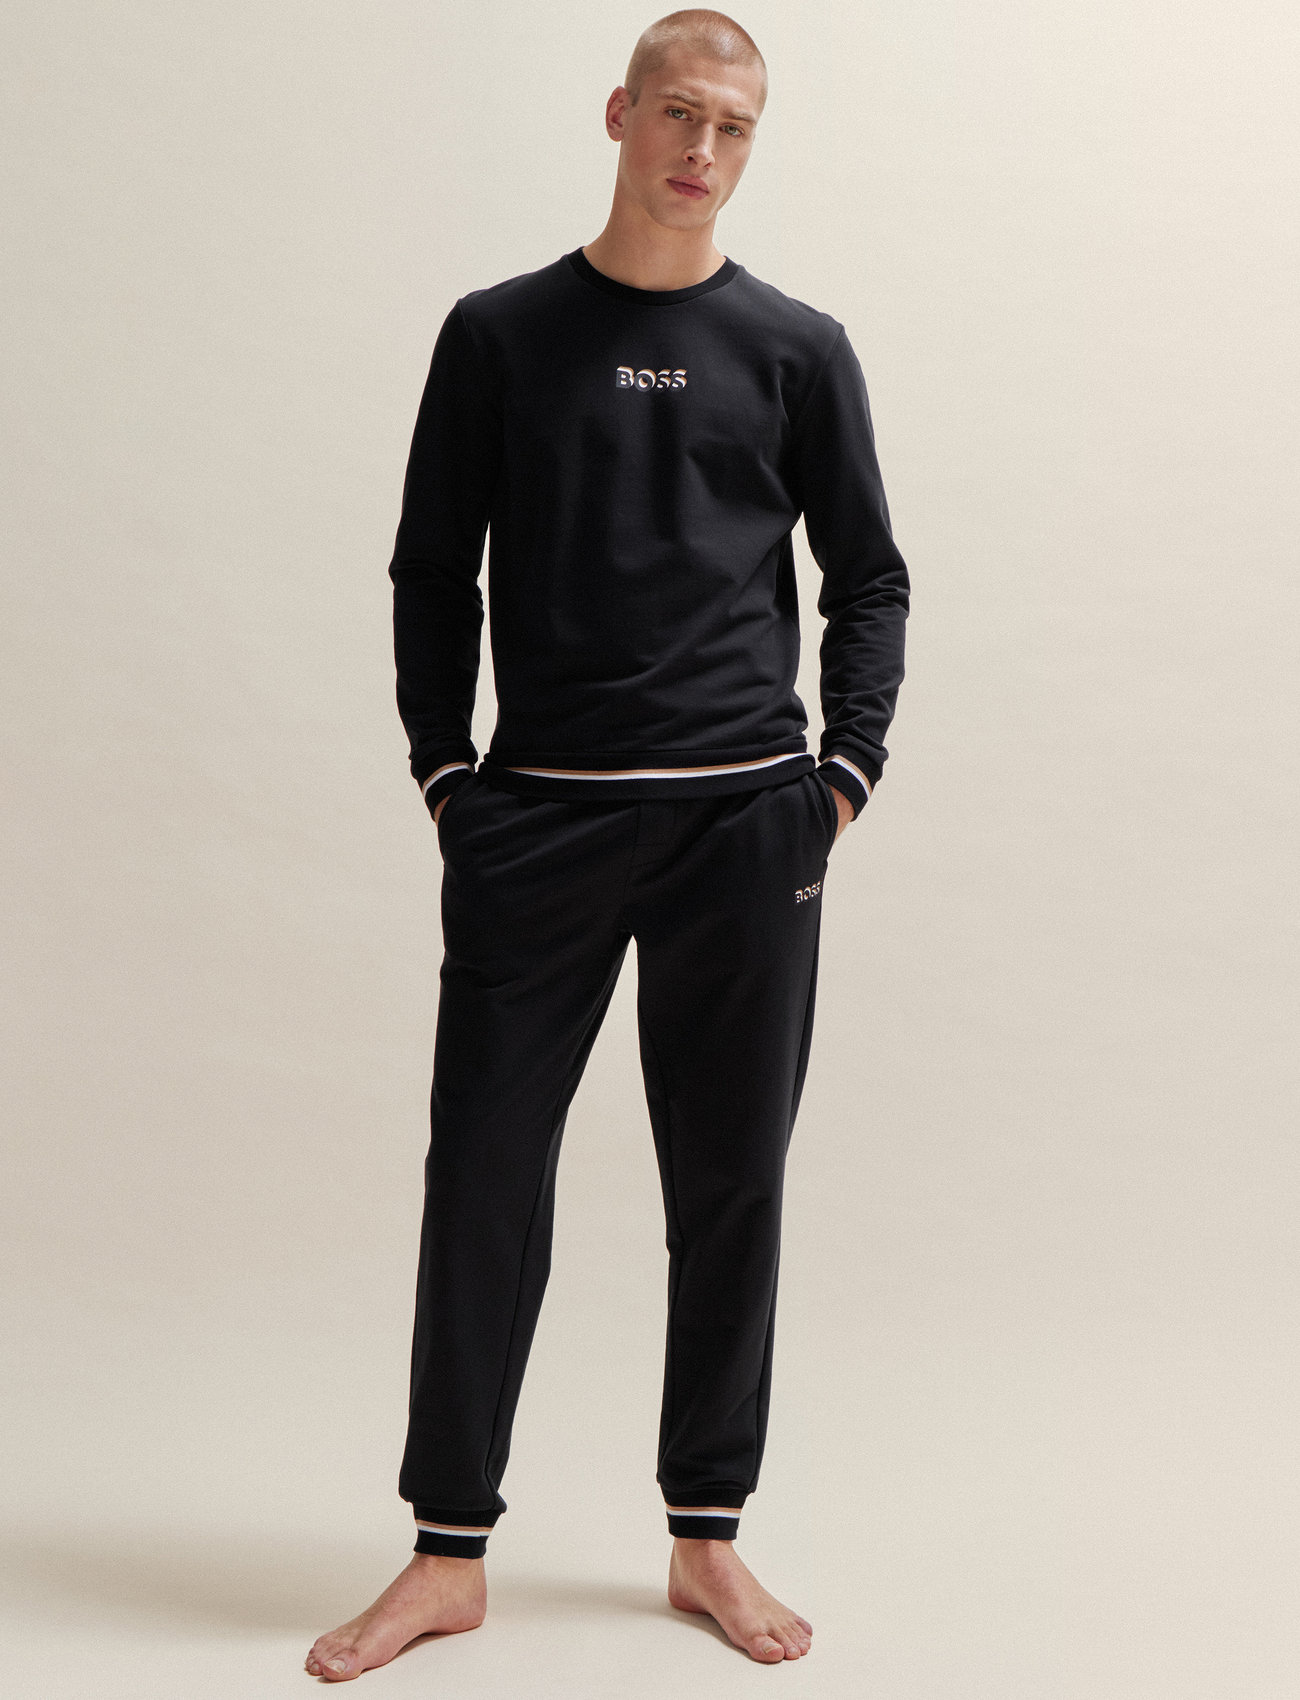 BOSS - Iconic Sweatshirt - pidžaamapluusid - black - 1